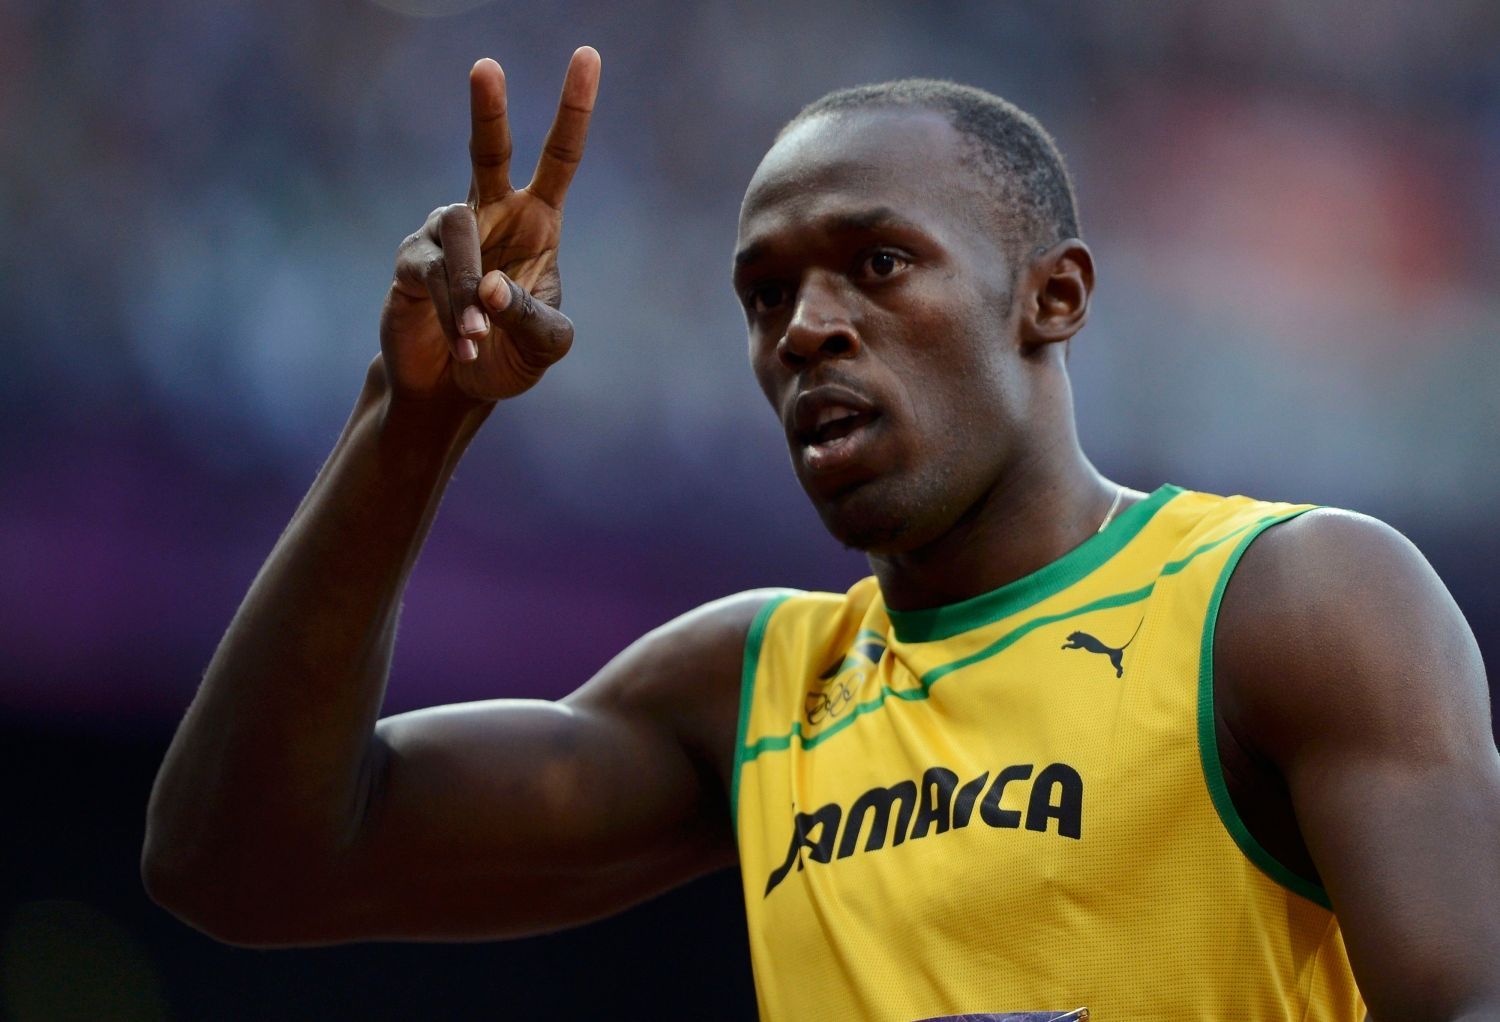 Jamajský sprinter Usain Bolt zdraví fanoušky během semifinále na 100 metrů na OH 2012 v Londýně.